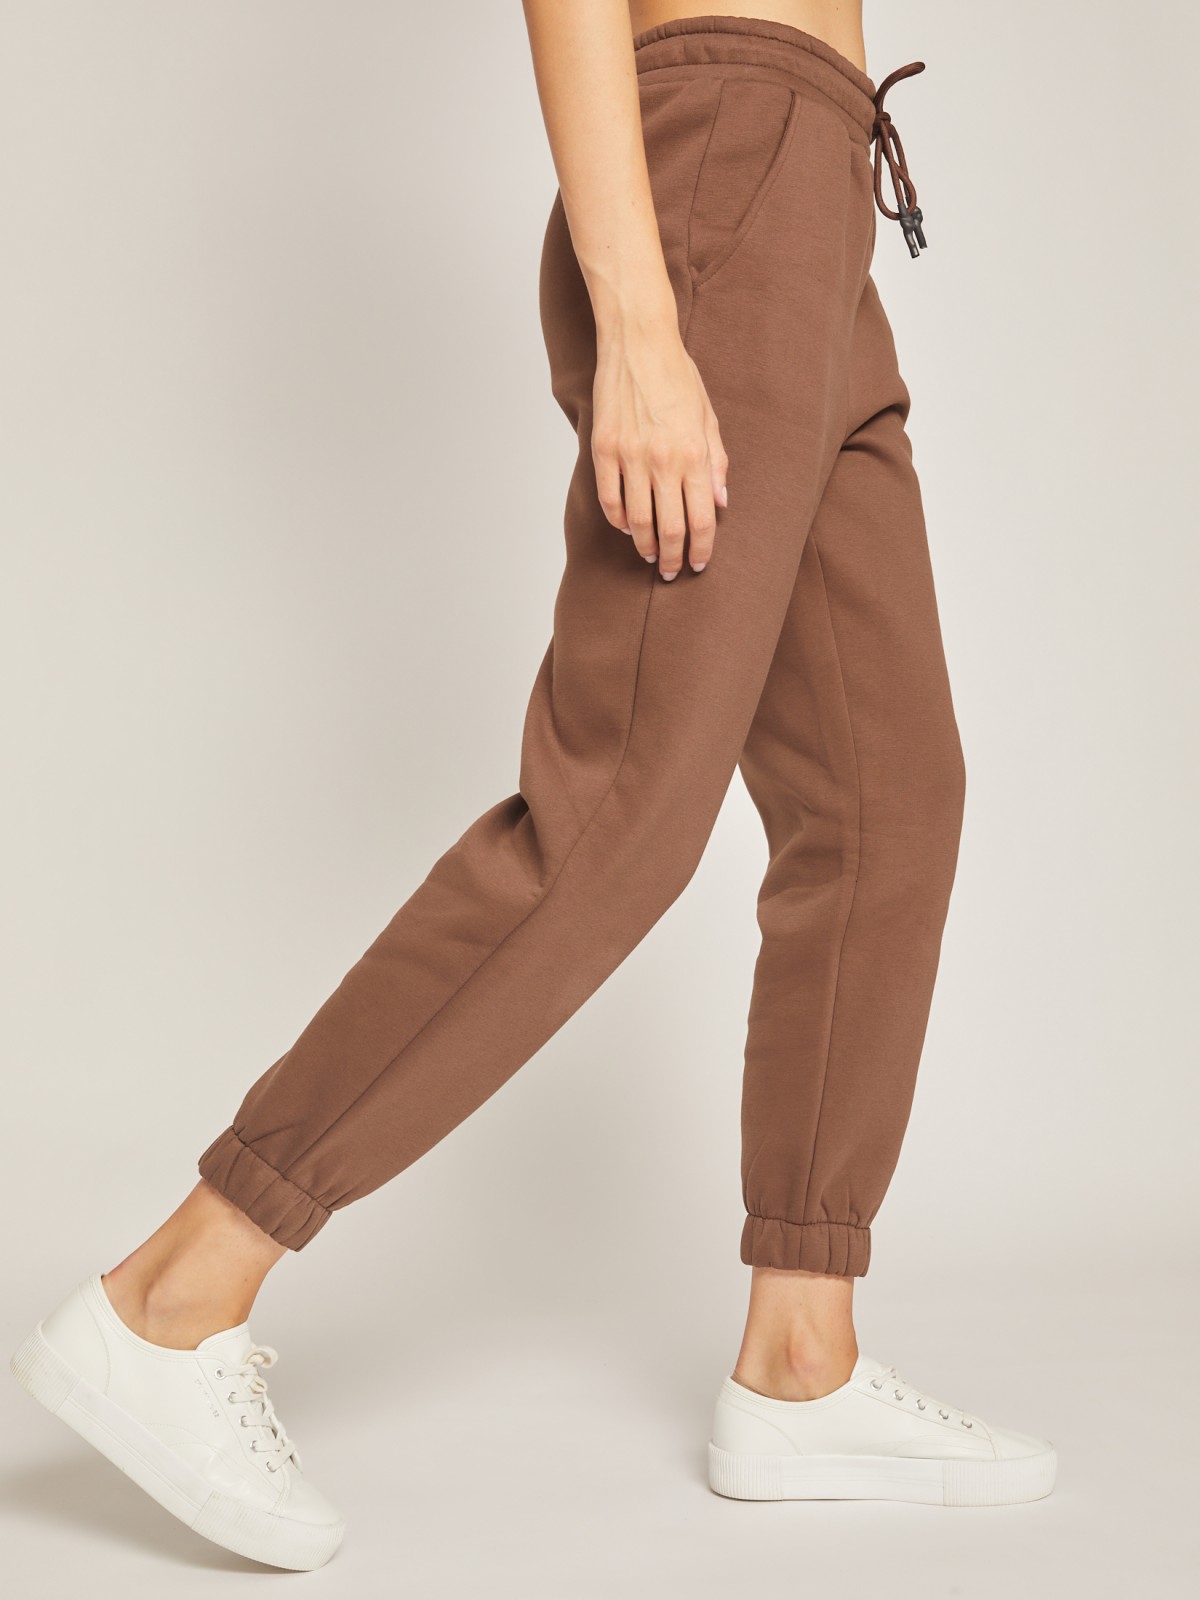 Утеплённые брюки-джоггеры zolla 02142731Y091, цвет коричневый, размер XS - фото 3